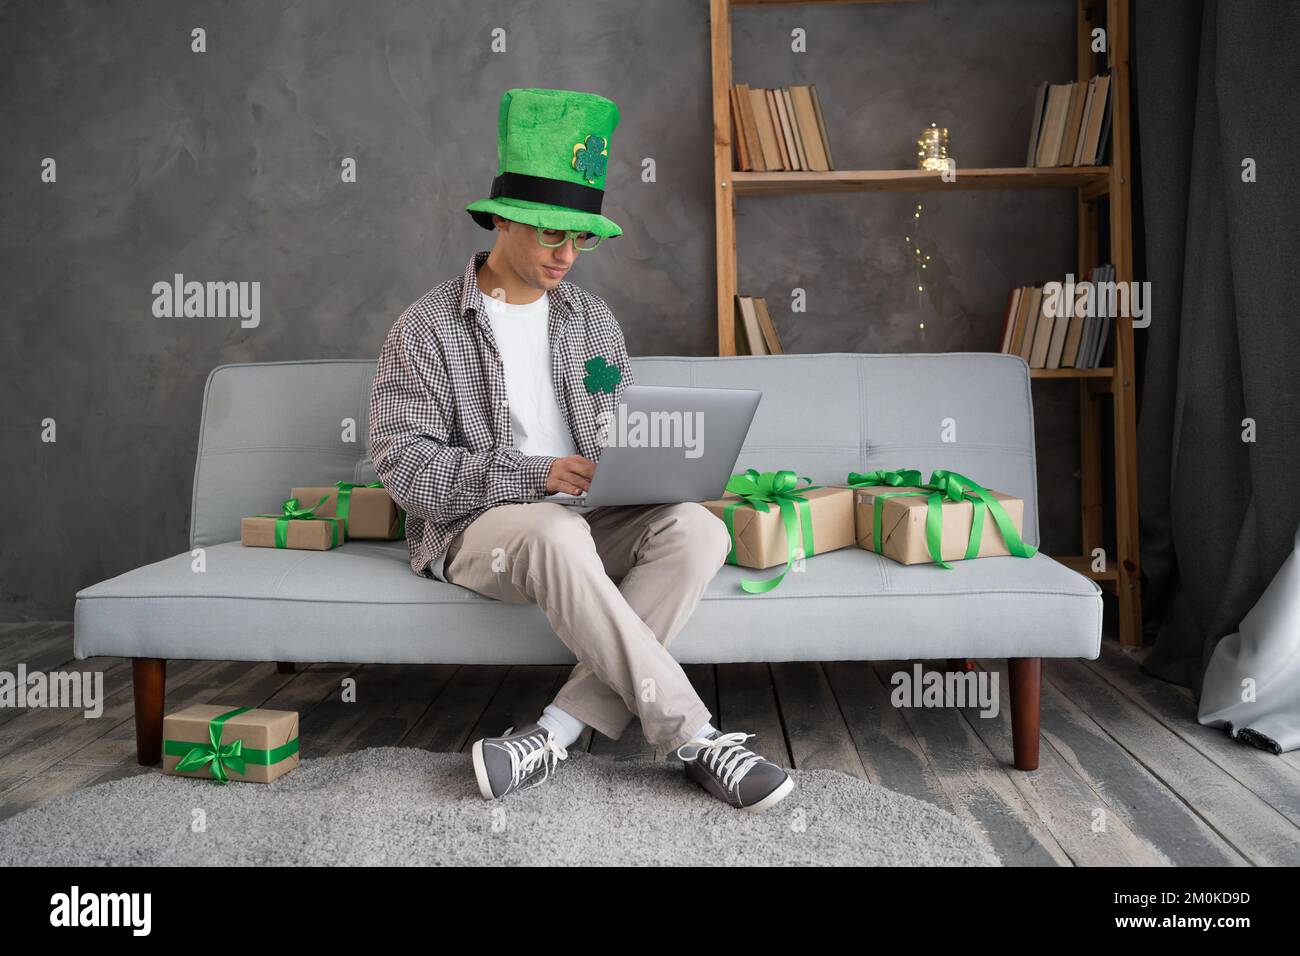 Das Online-Shopping-Konzept des St. Patricks Day. Männlicher Käufer mit Laptop auf der Couch. Der Typ kauft Geschenke, bereitet sich auf den St. Patricks-Tag vor, sitzt unter Geschenkschachteln. Sp Stockfoto